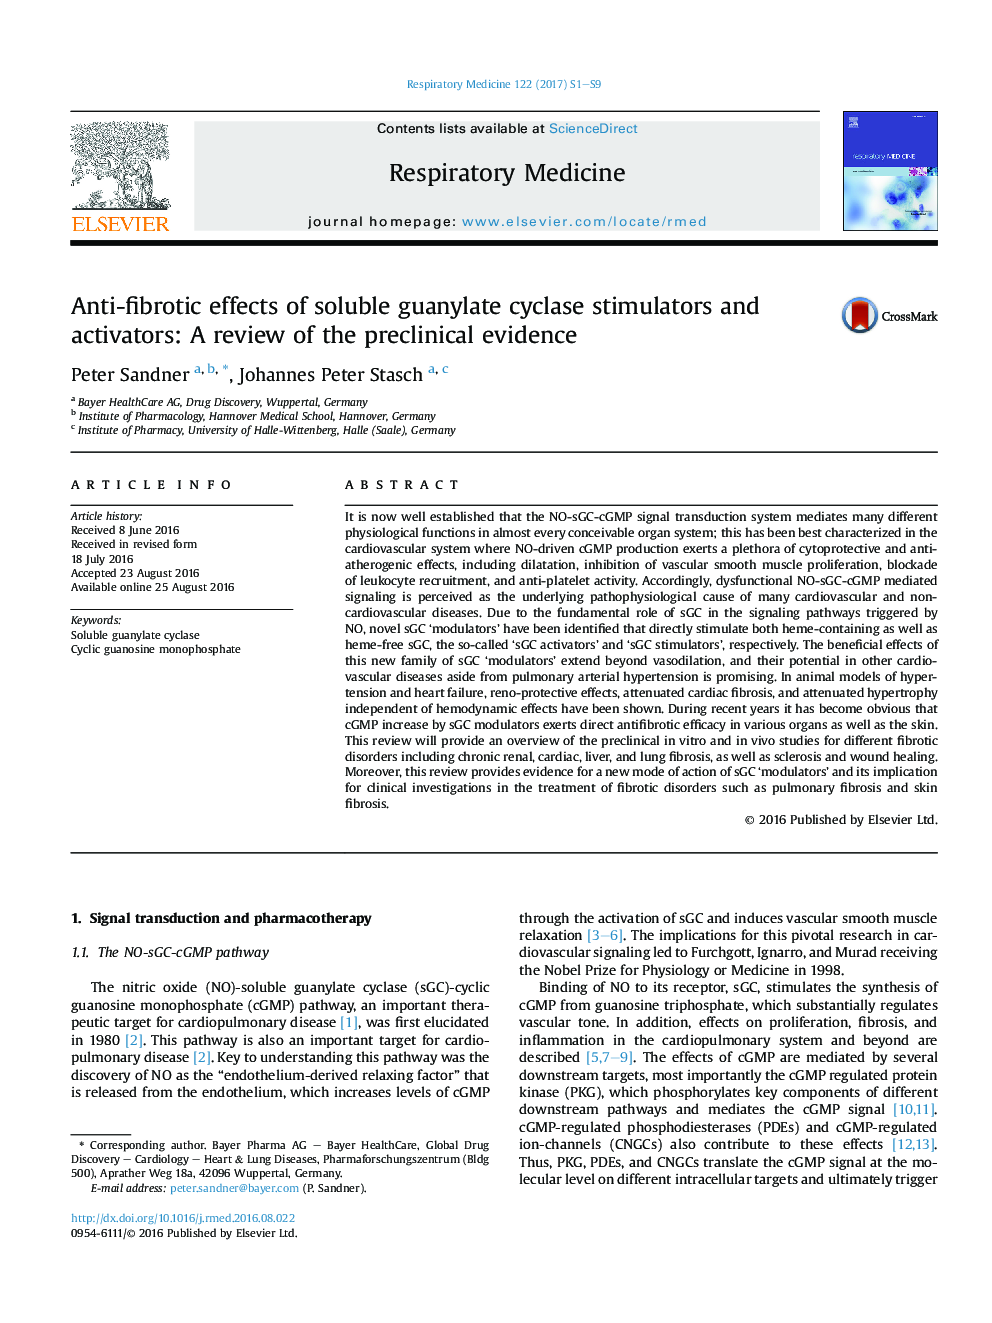 اثرات ضد فیبروتیک محرک ها و فعال کننده های سیکلاز گوانیلات محلول: بررسی شواهد پیشین 